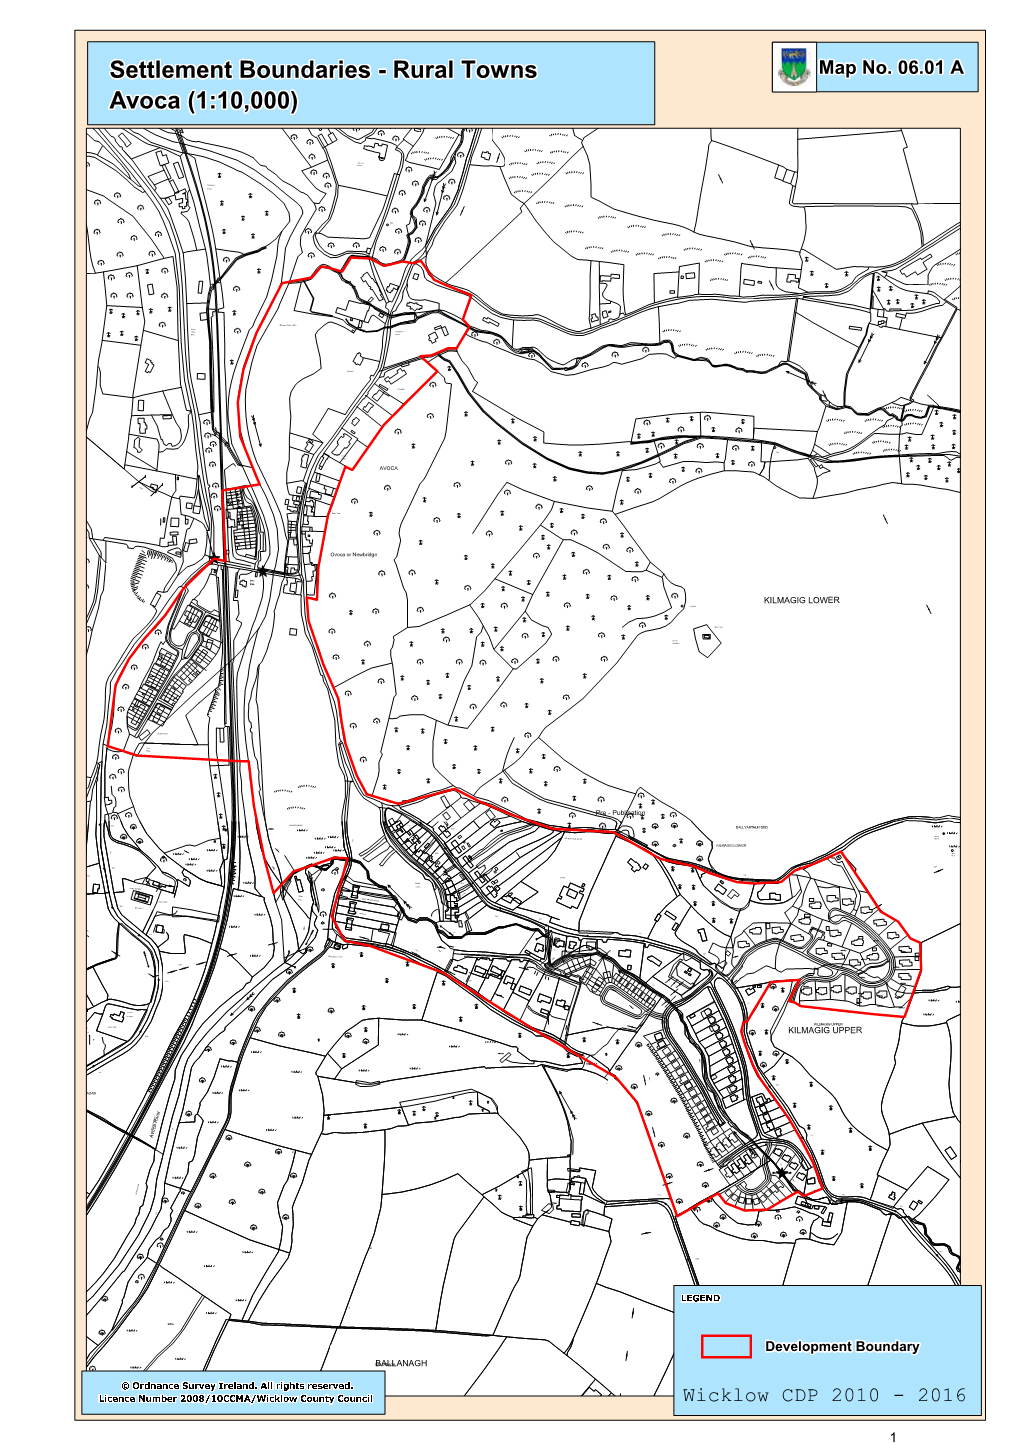 Rural Towns Settlement Boundaries